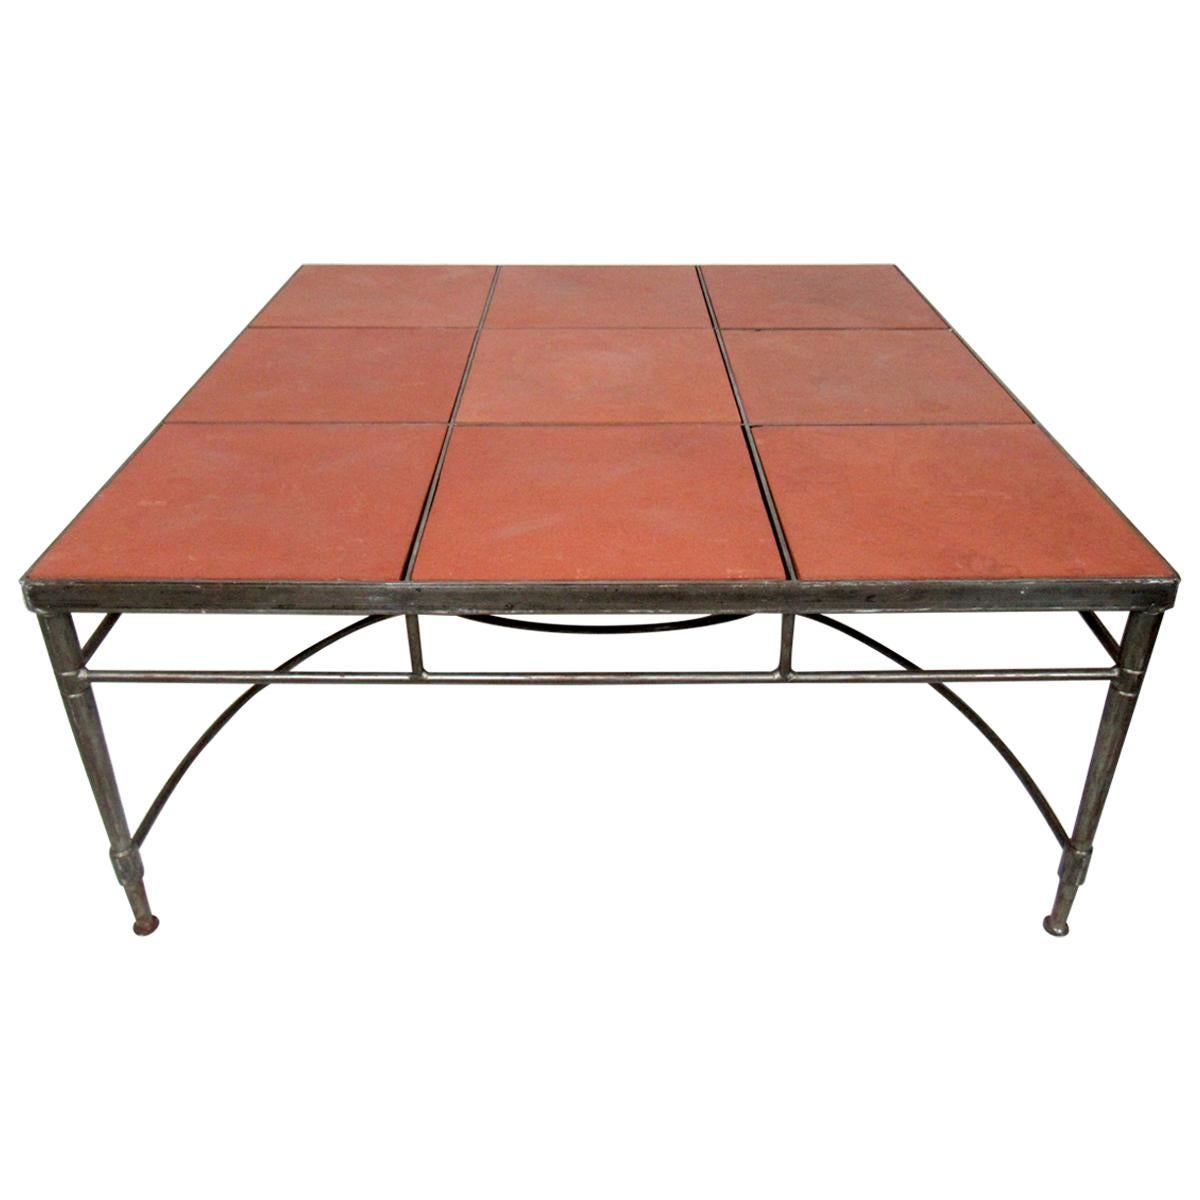 Vintage Industrial Tile Coffee Table